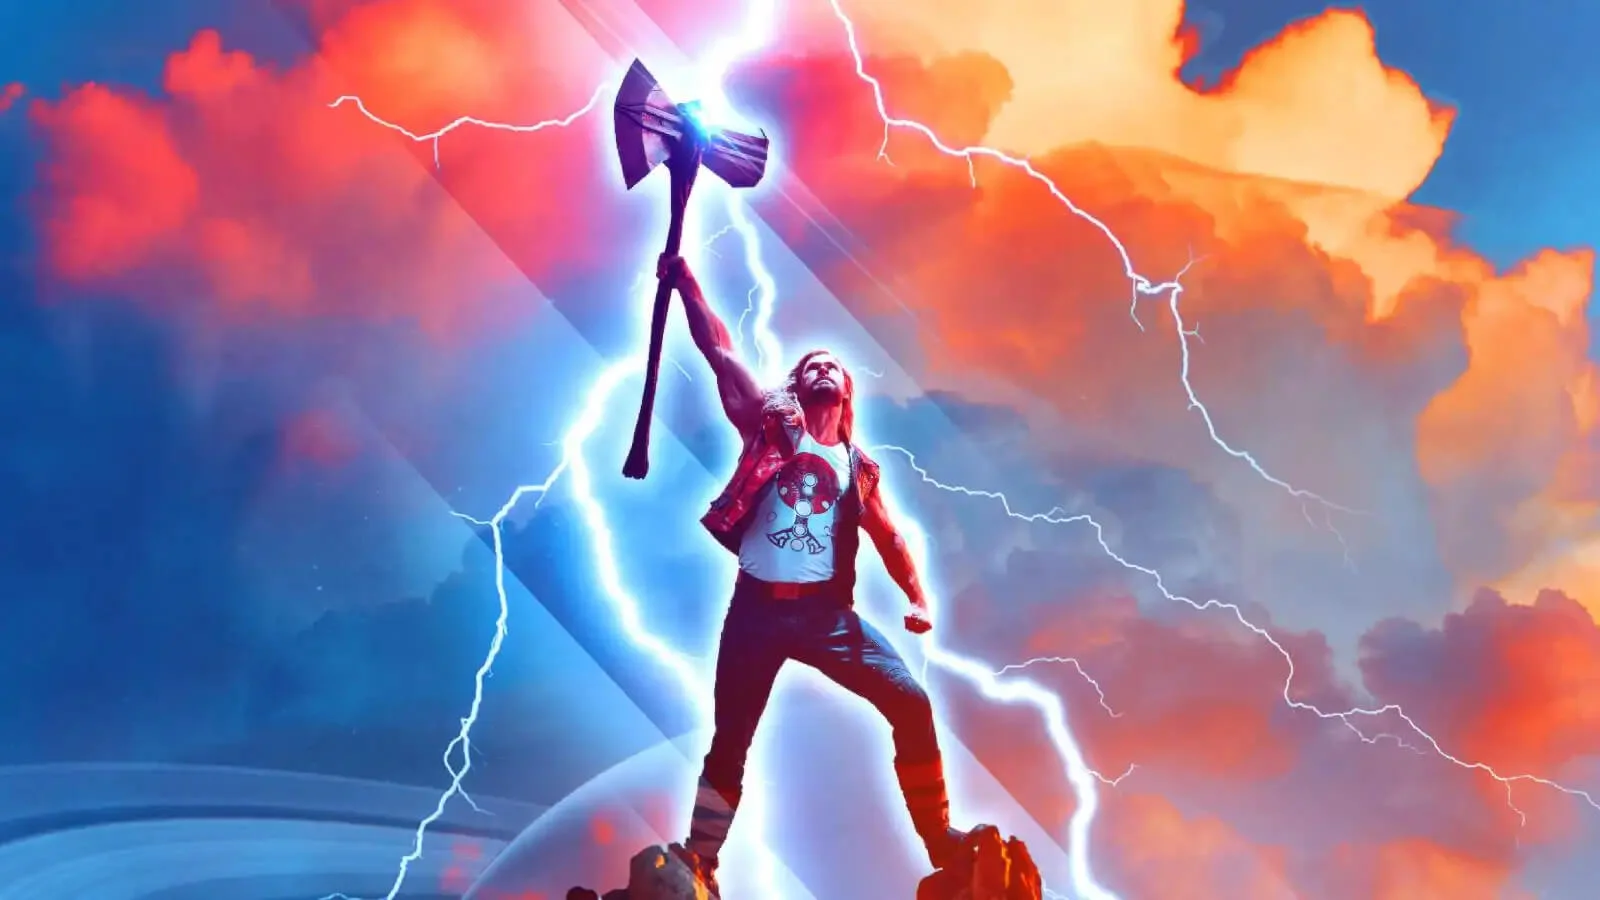 Thor: Szerelem és mennydörgés